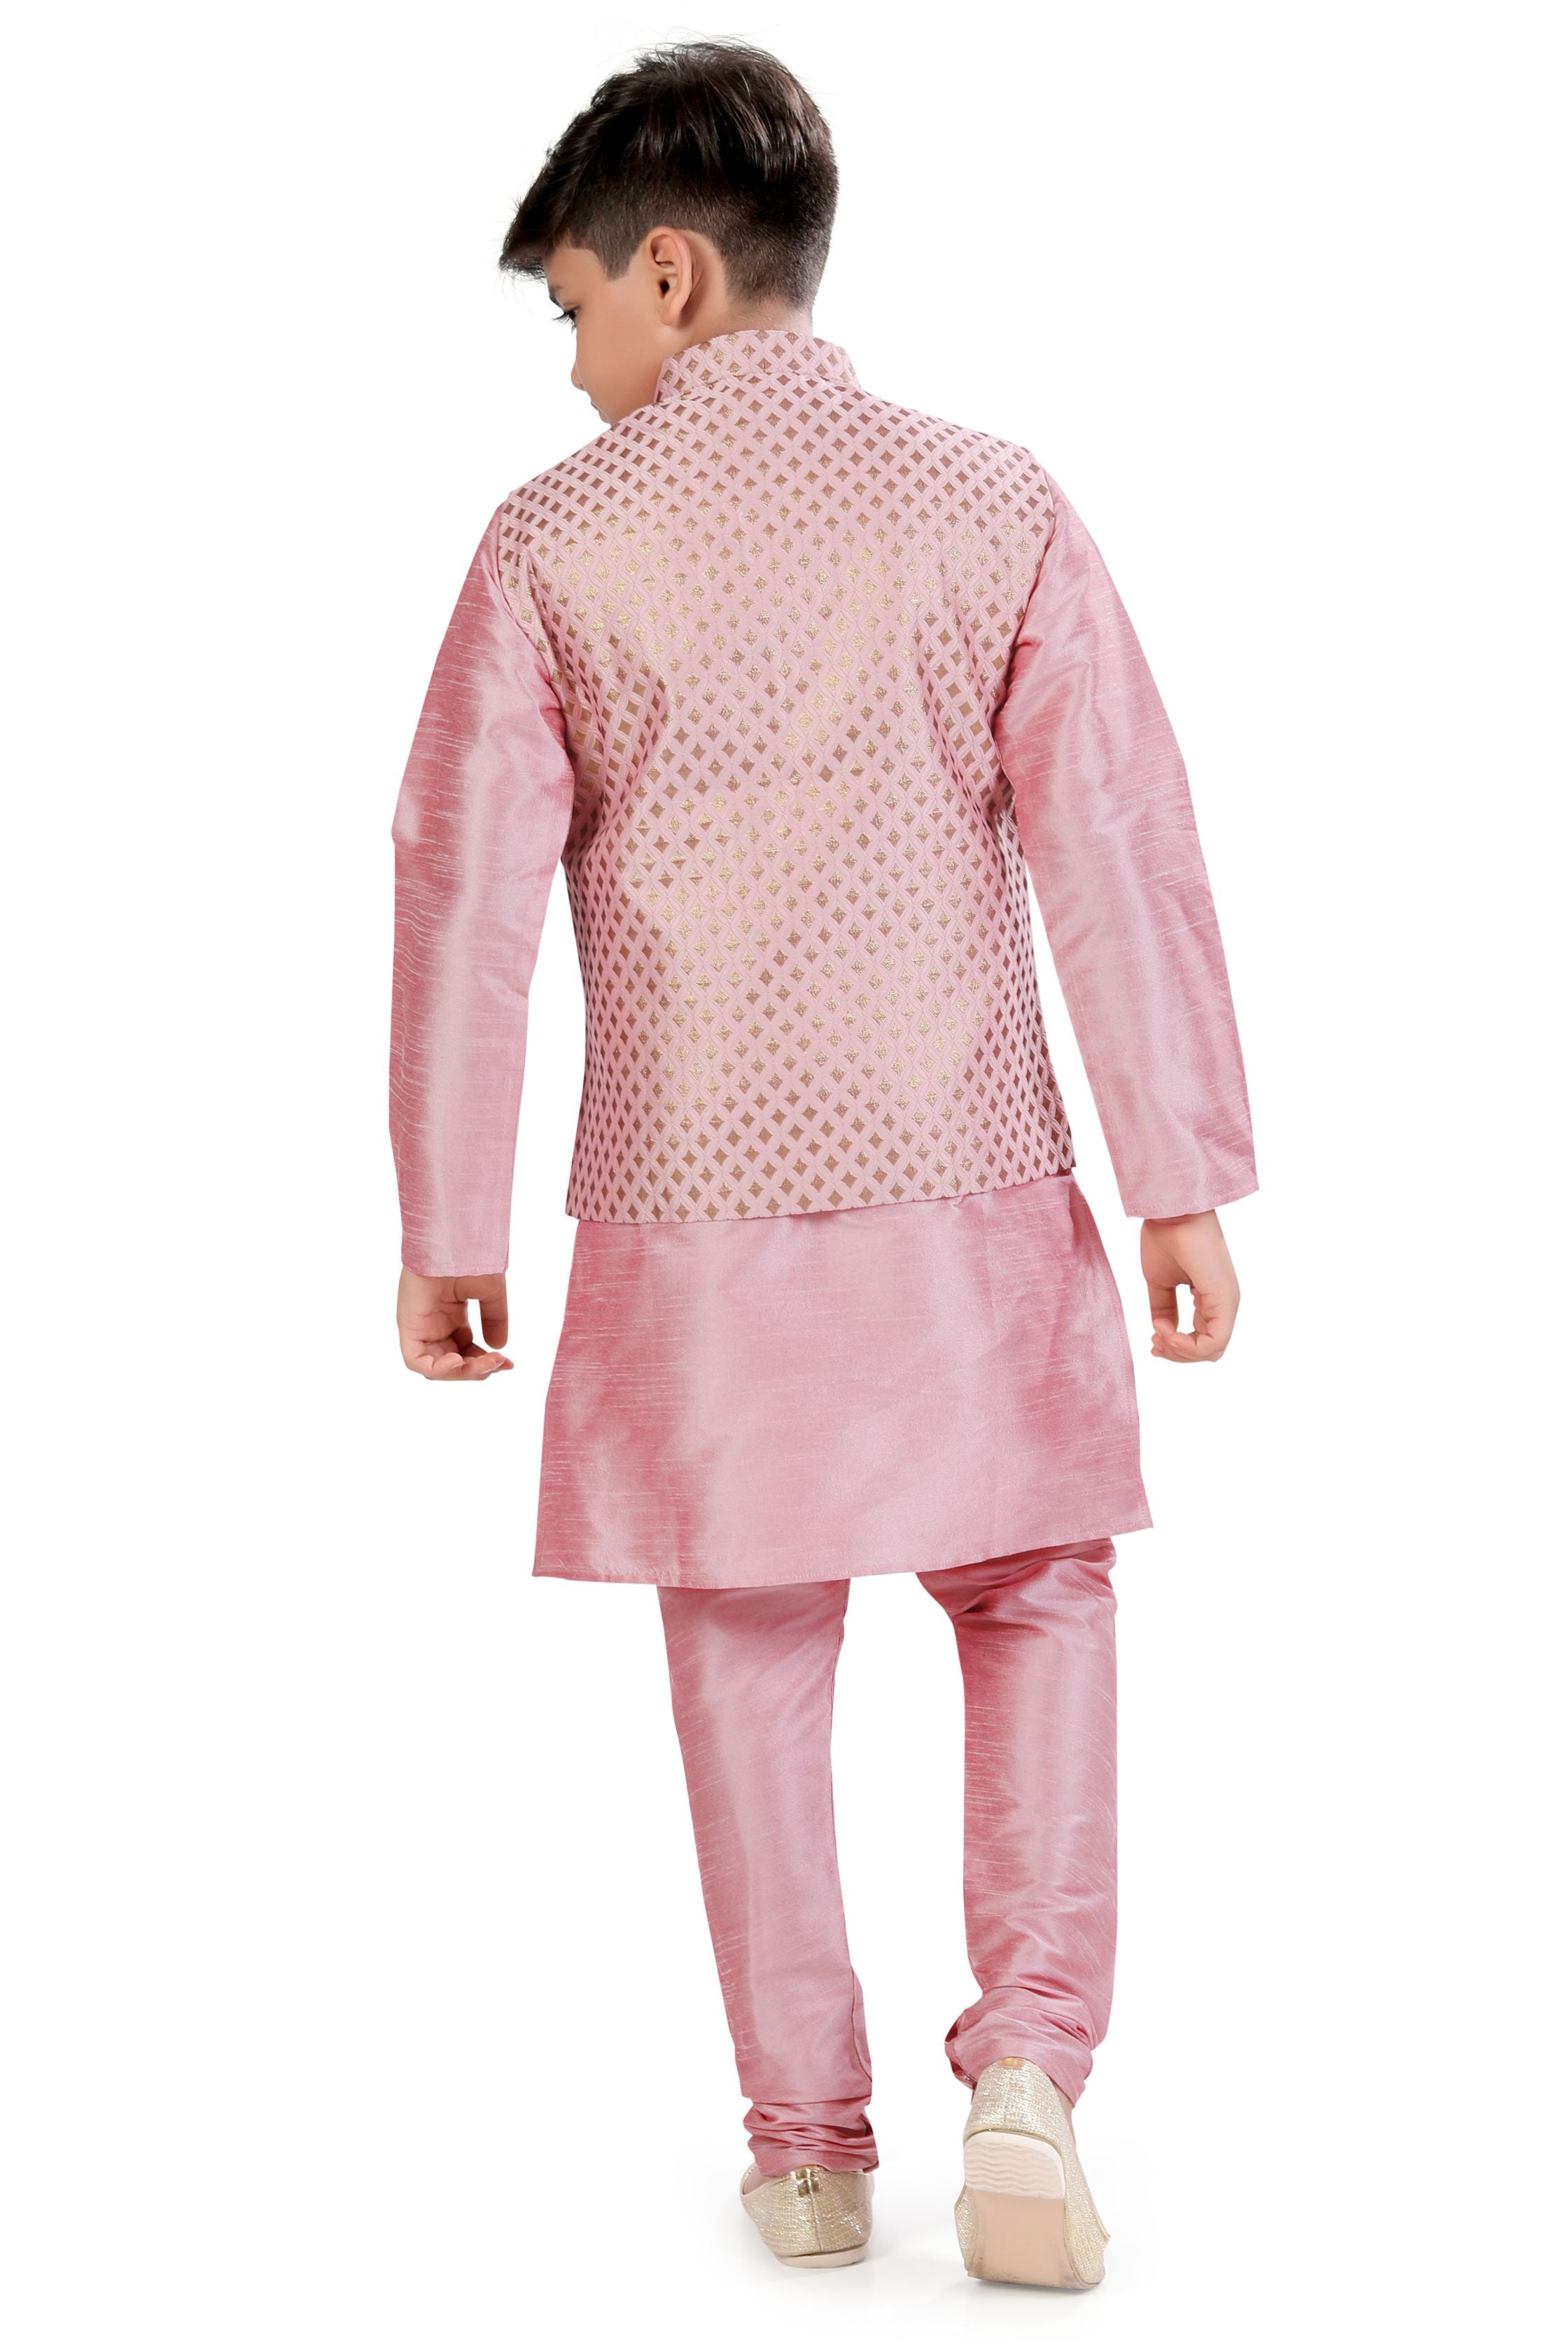 Boys Banarasi Brocade Vest Coat Set in Baby Pink - Premium 3 pieces Vest coat suit from Dapper Ethnic - Just $79! Shop now at Dulhan Exclusives